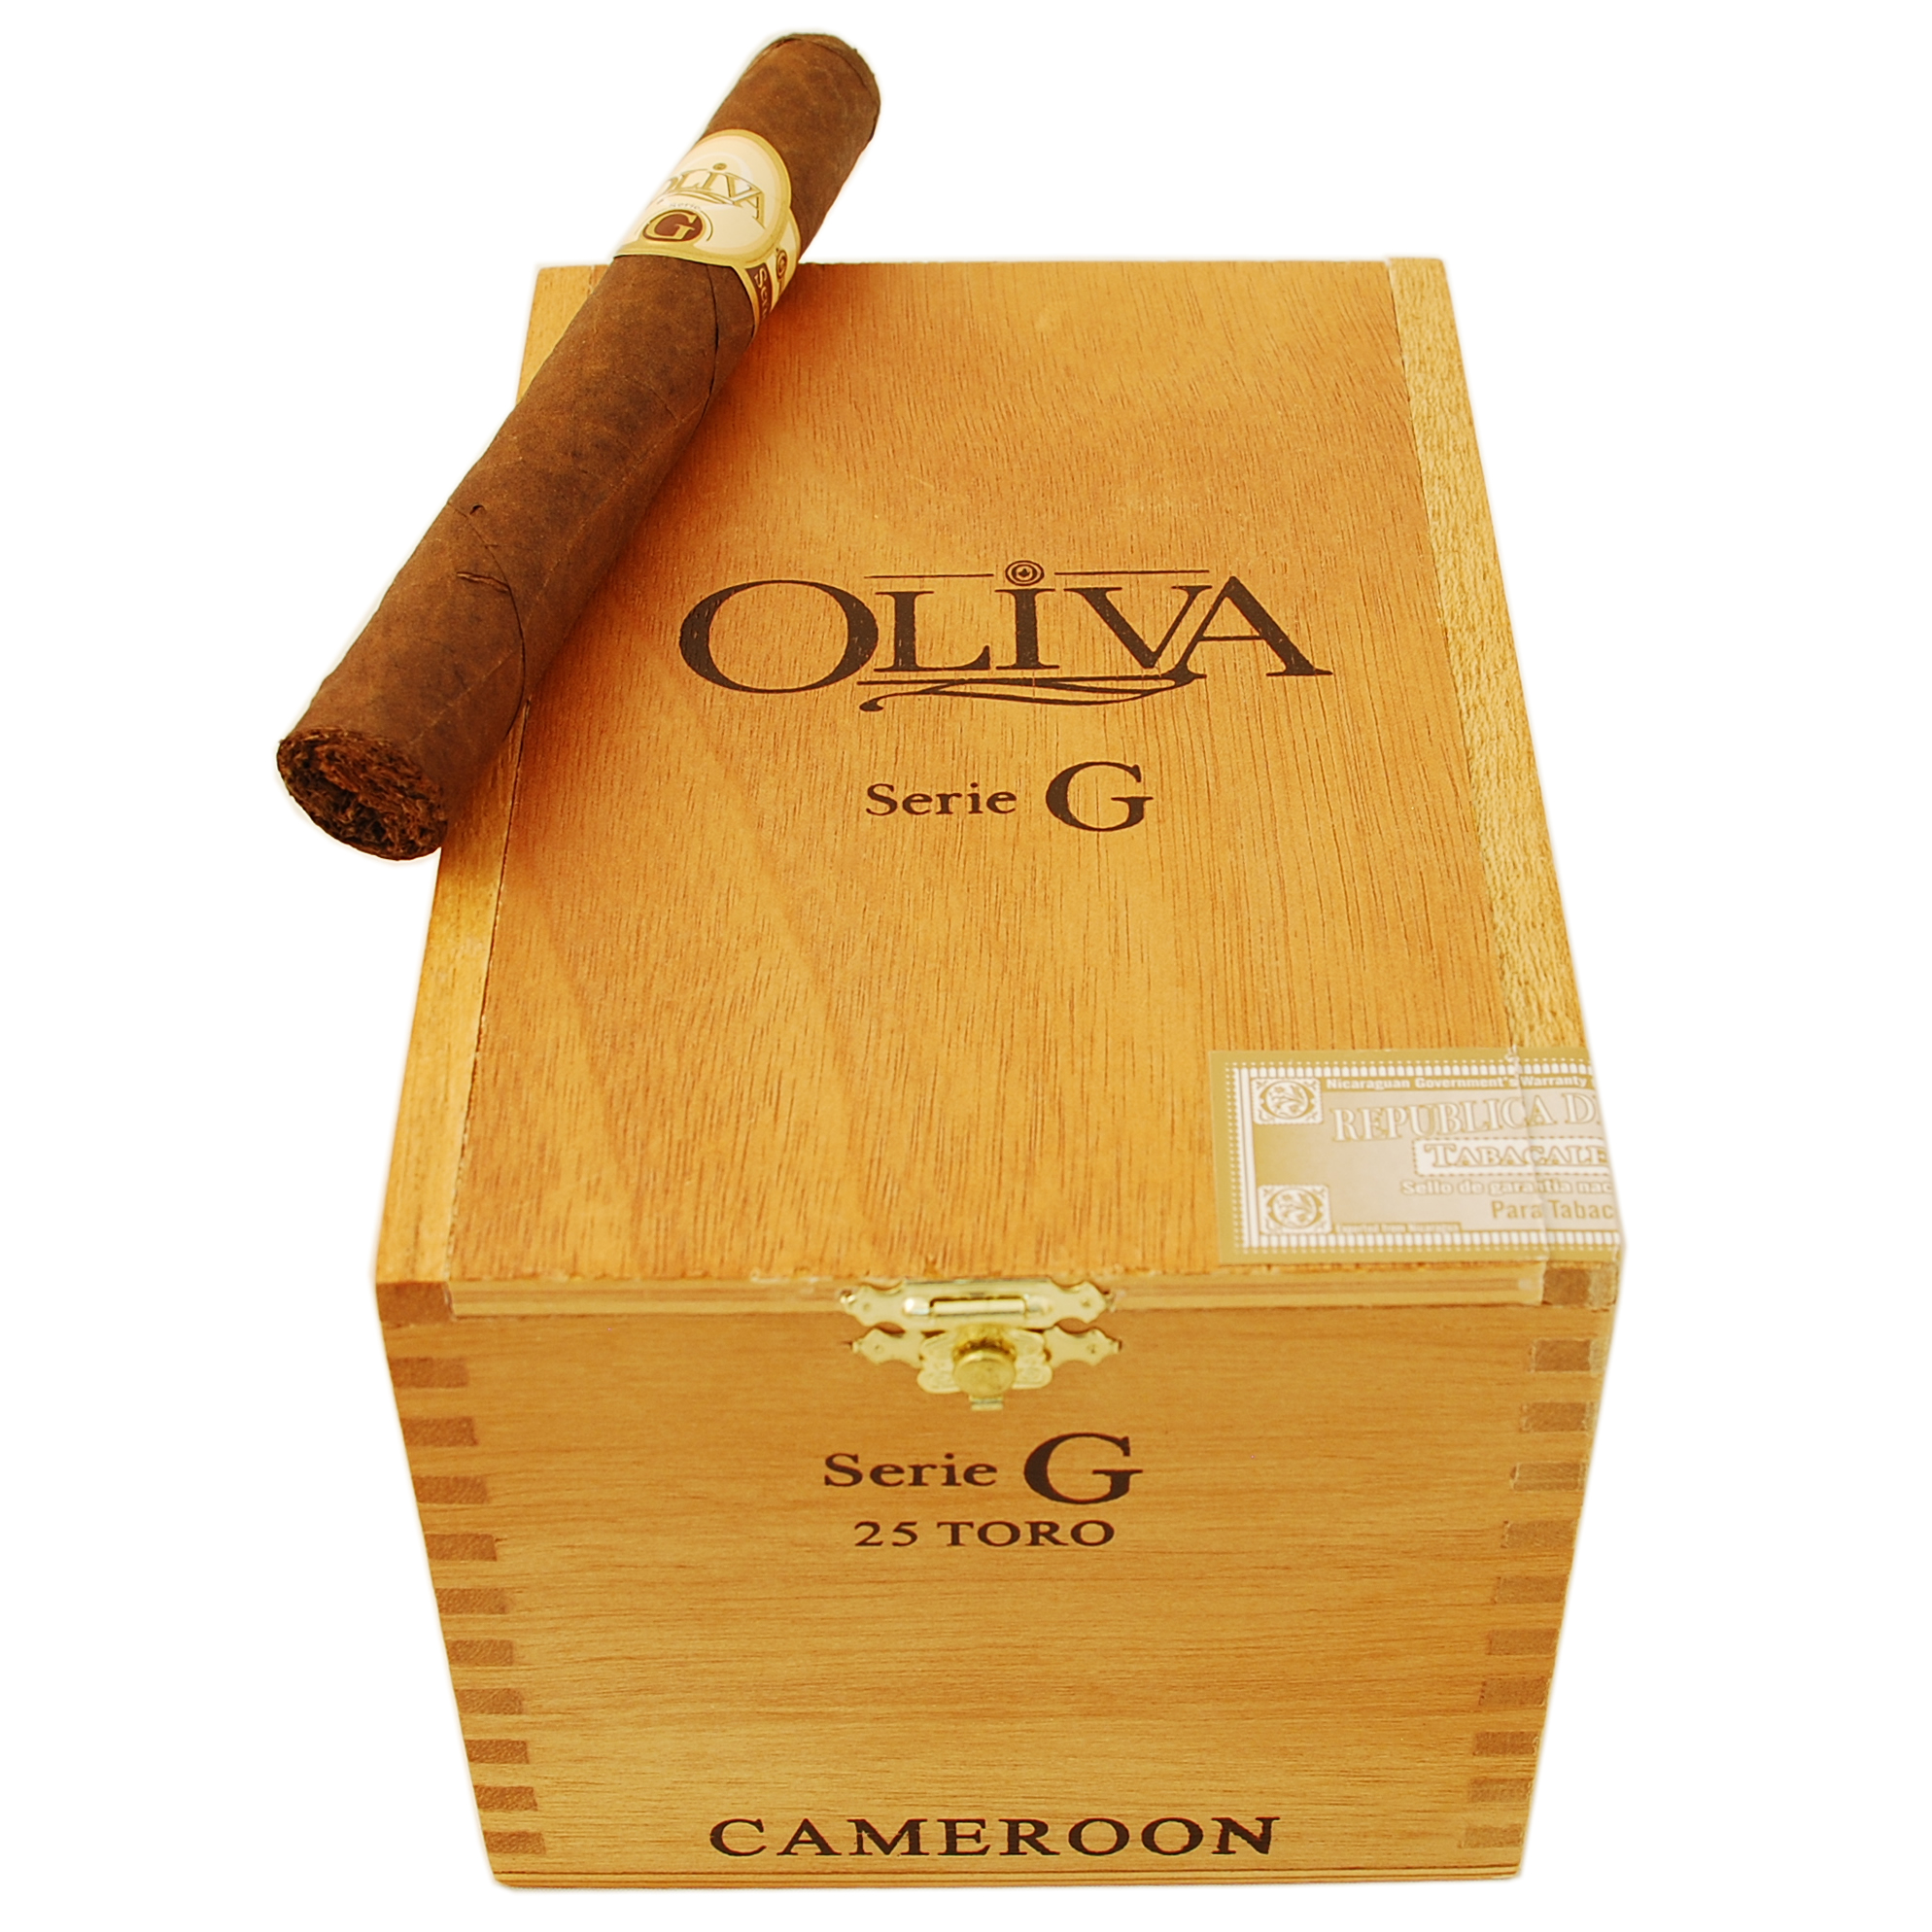 Xì gà Oliva Serie G Toro hộp gỗ 25 điếu